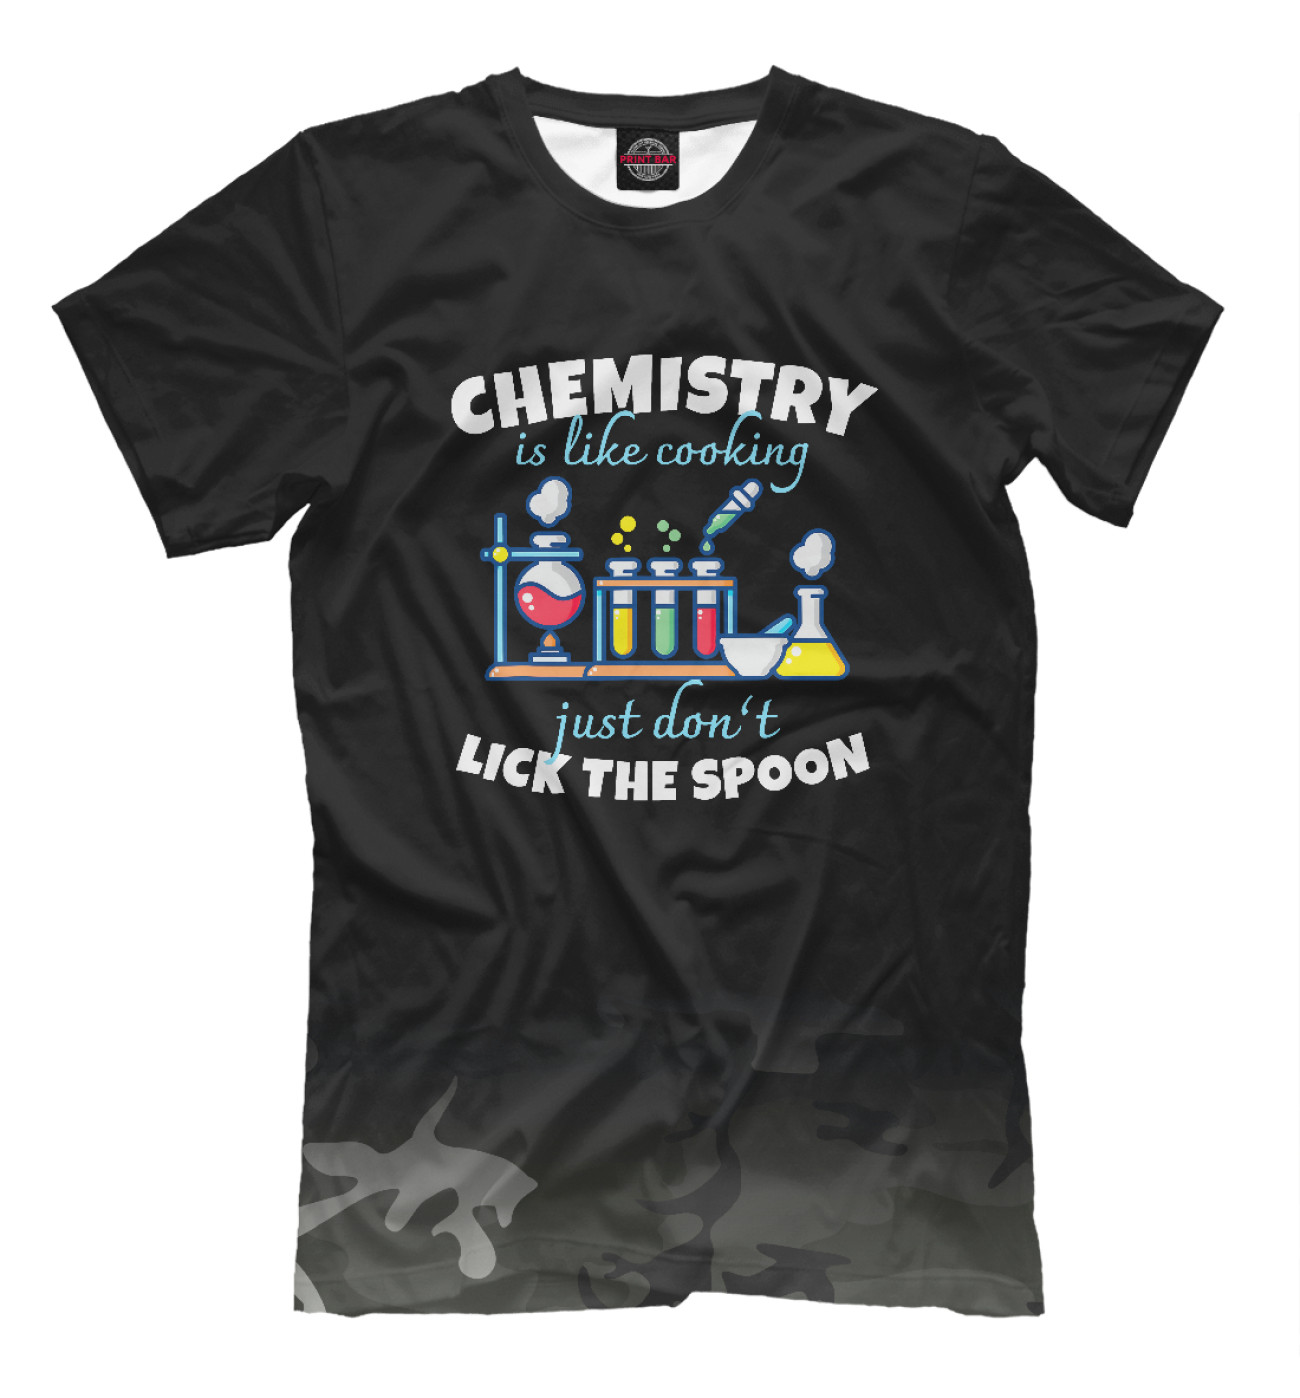 Мужская Футболка Chemistry Is Like Cooking, артикул: CHM-671199-fut-2